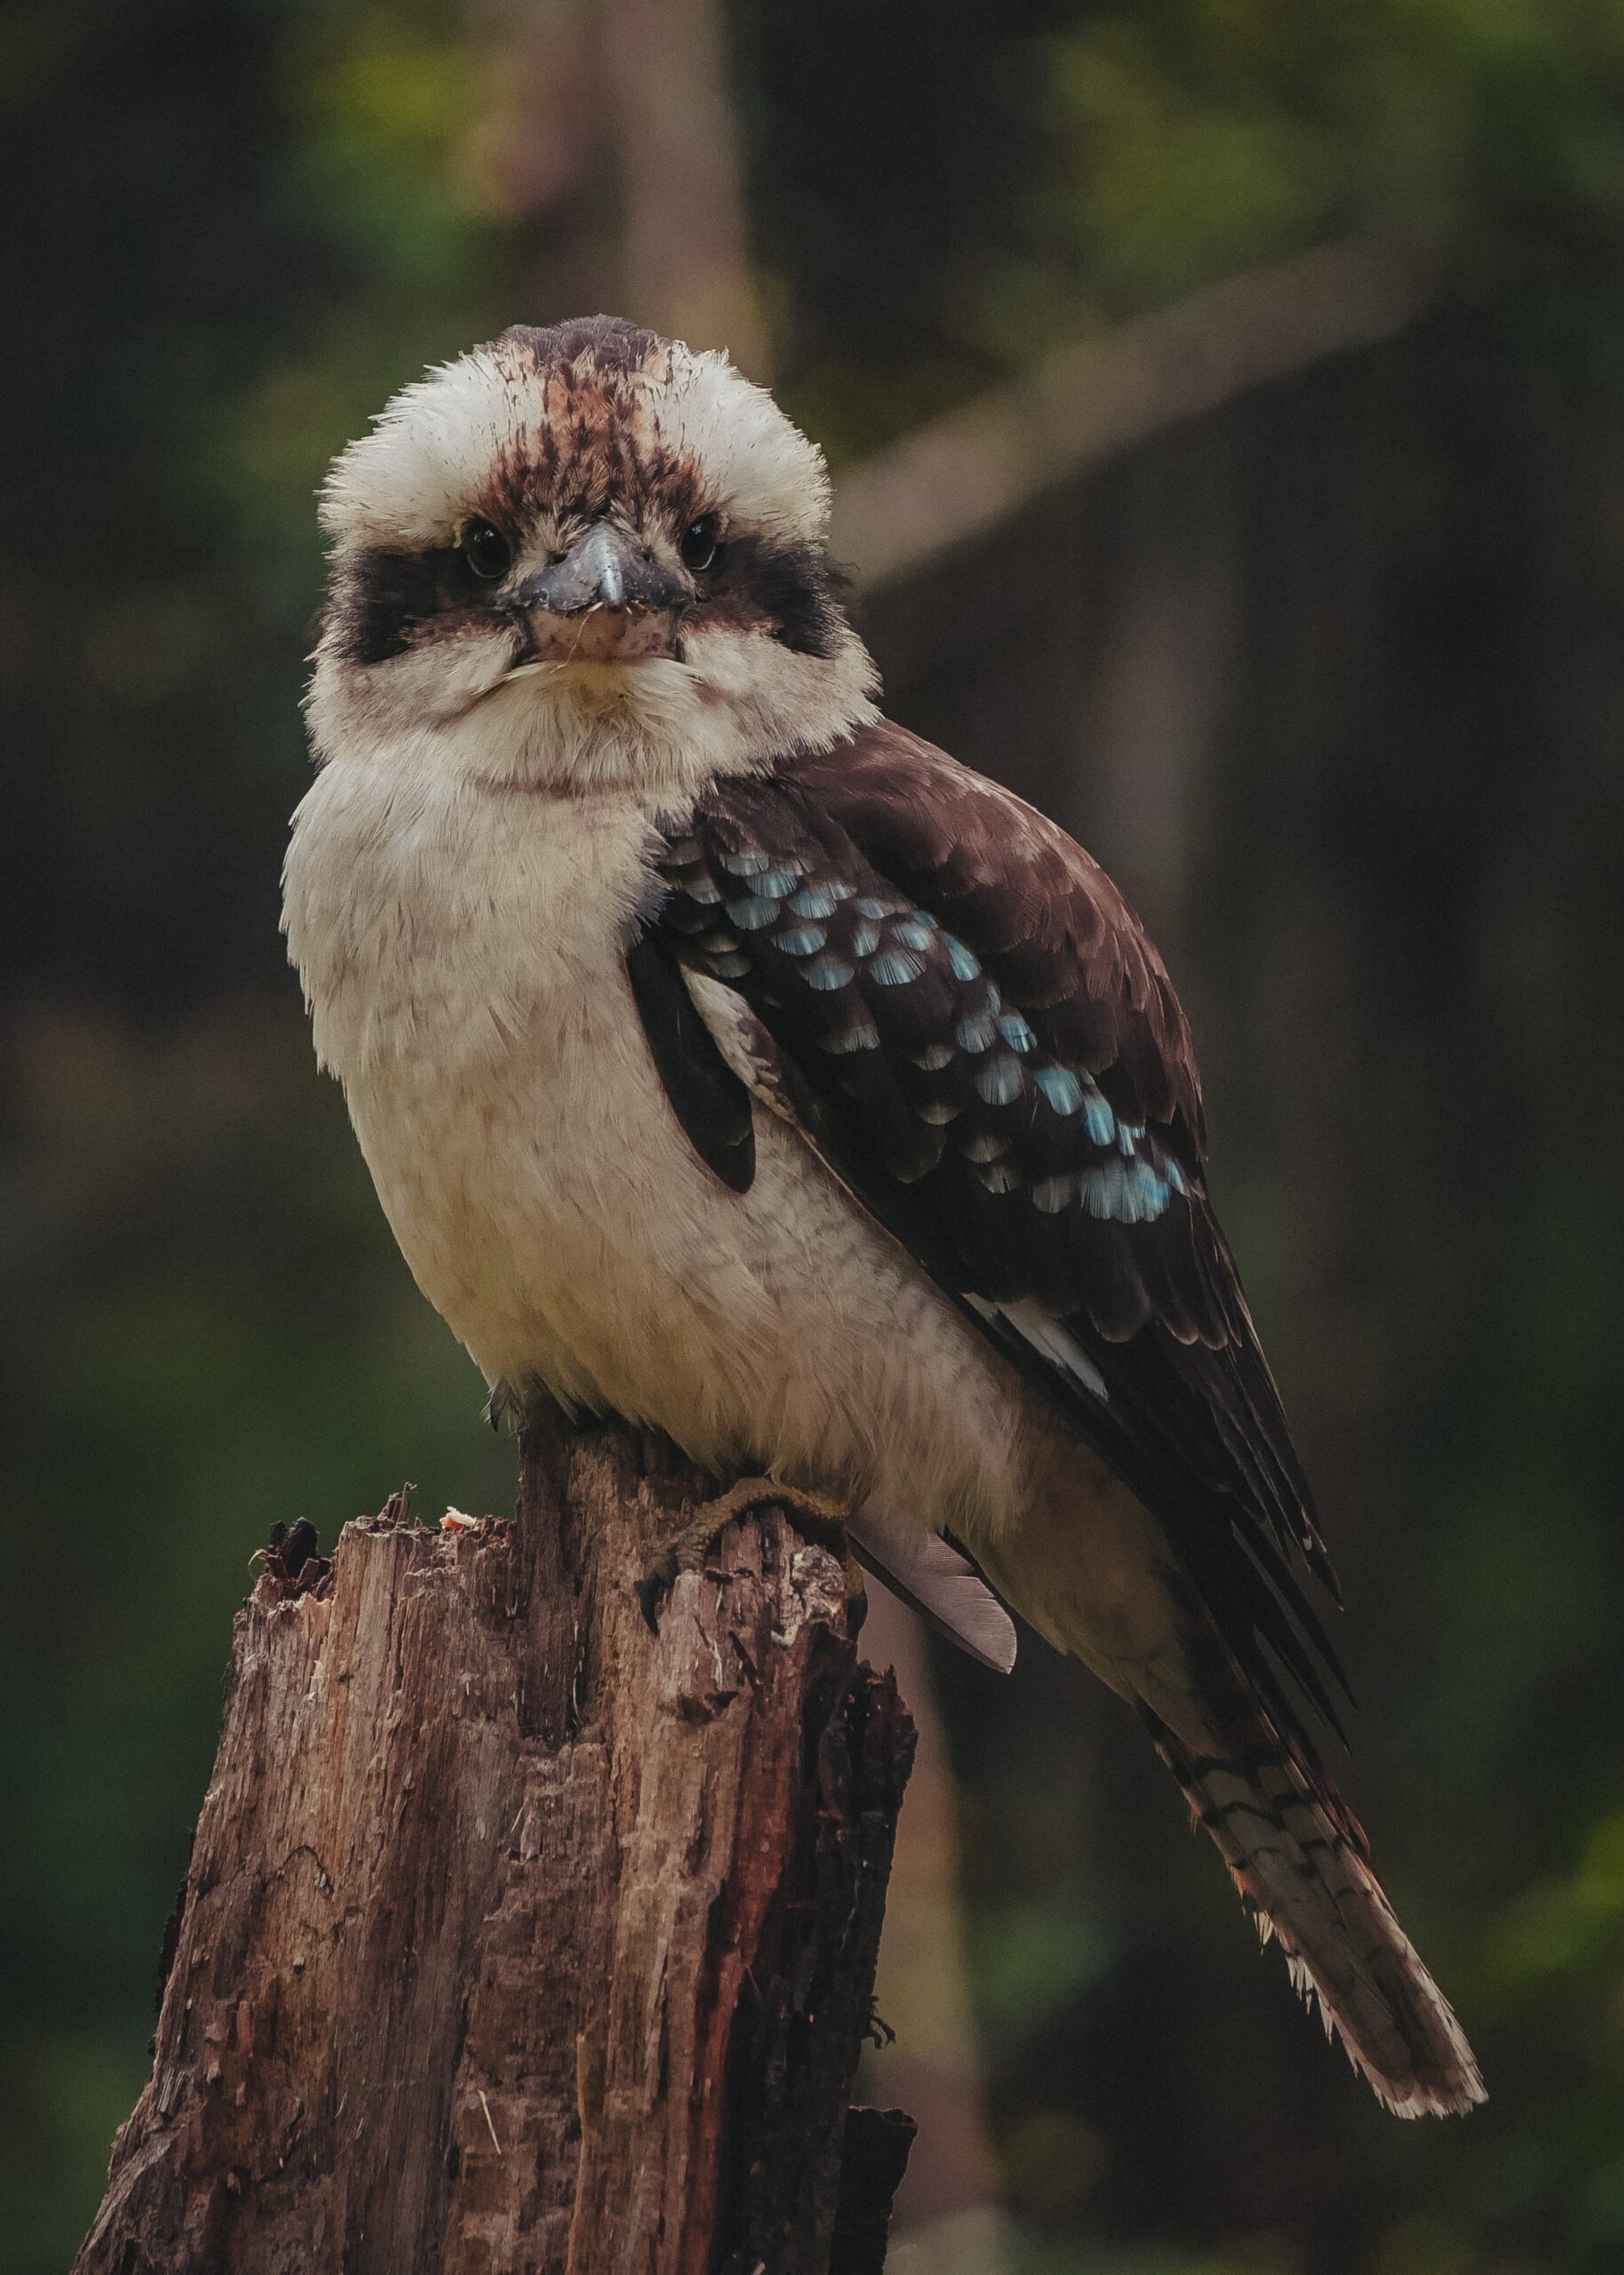 A kookaburra looking into the camera